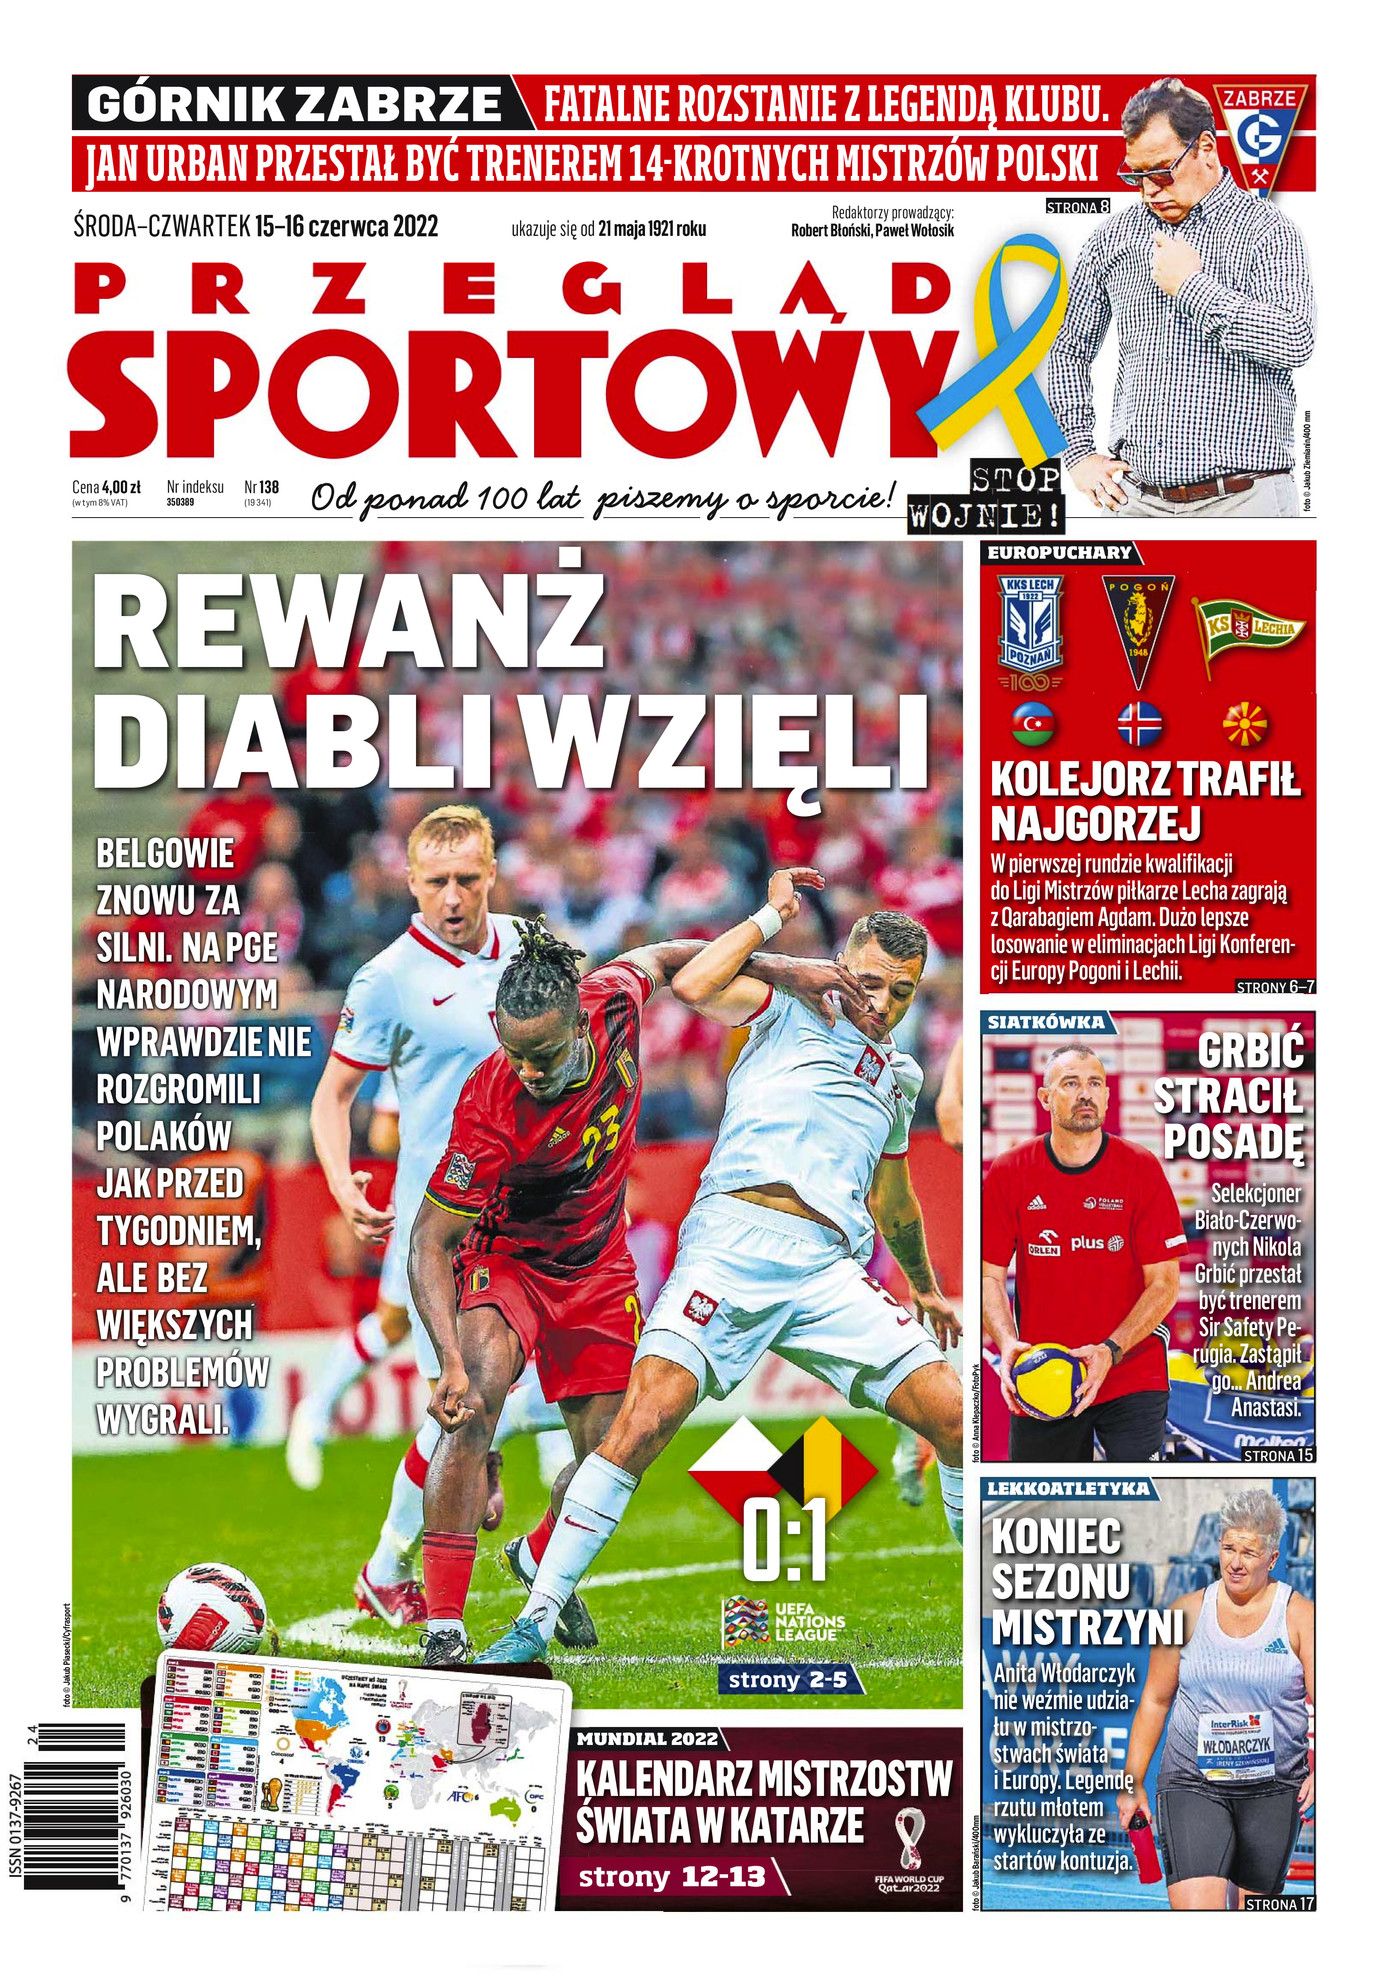 Przegląd Sportowy po meczu Polska - Belgia 0:1 (14.06.2022).